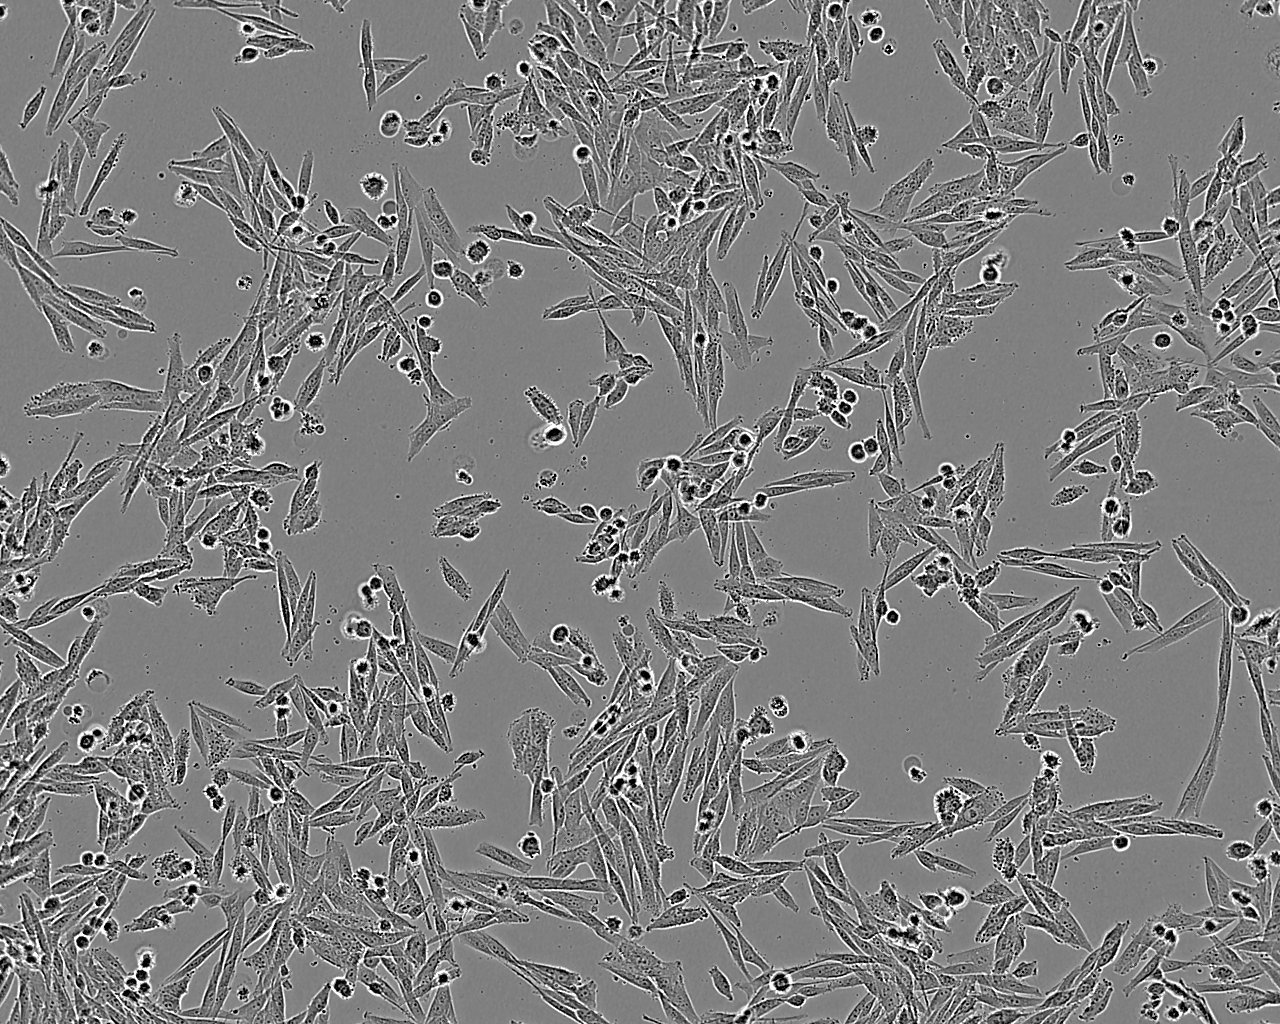 DoTc2 4510 epithelioid cells人子宫颈癌细胞系,DoTc2 4510 epithelioid cells